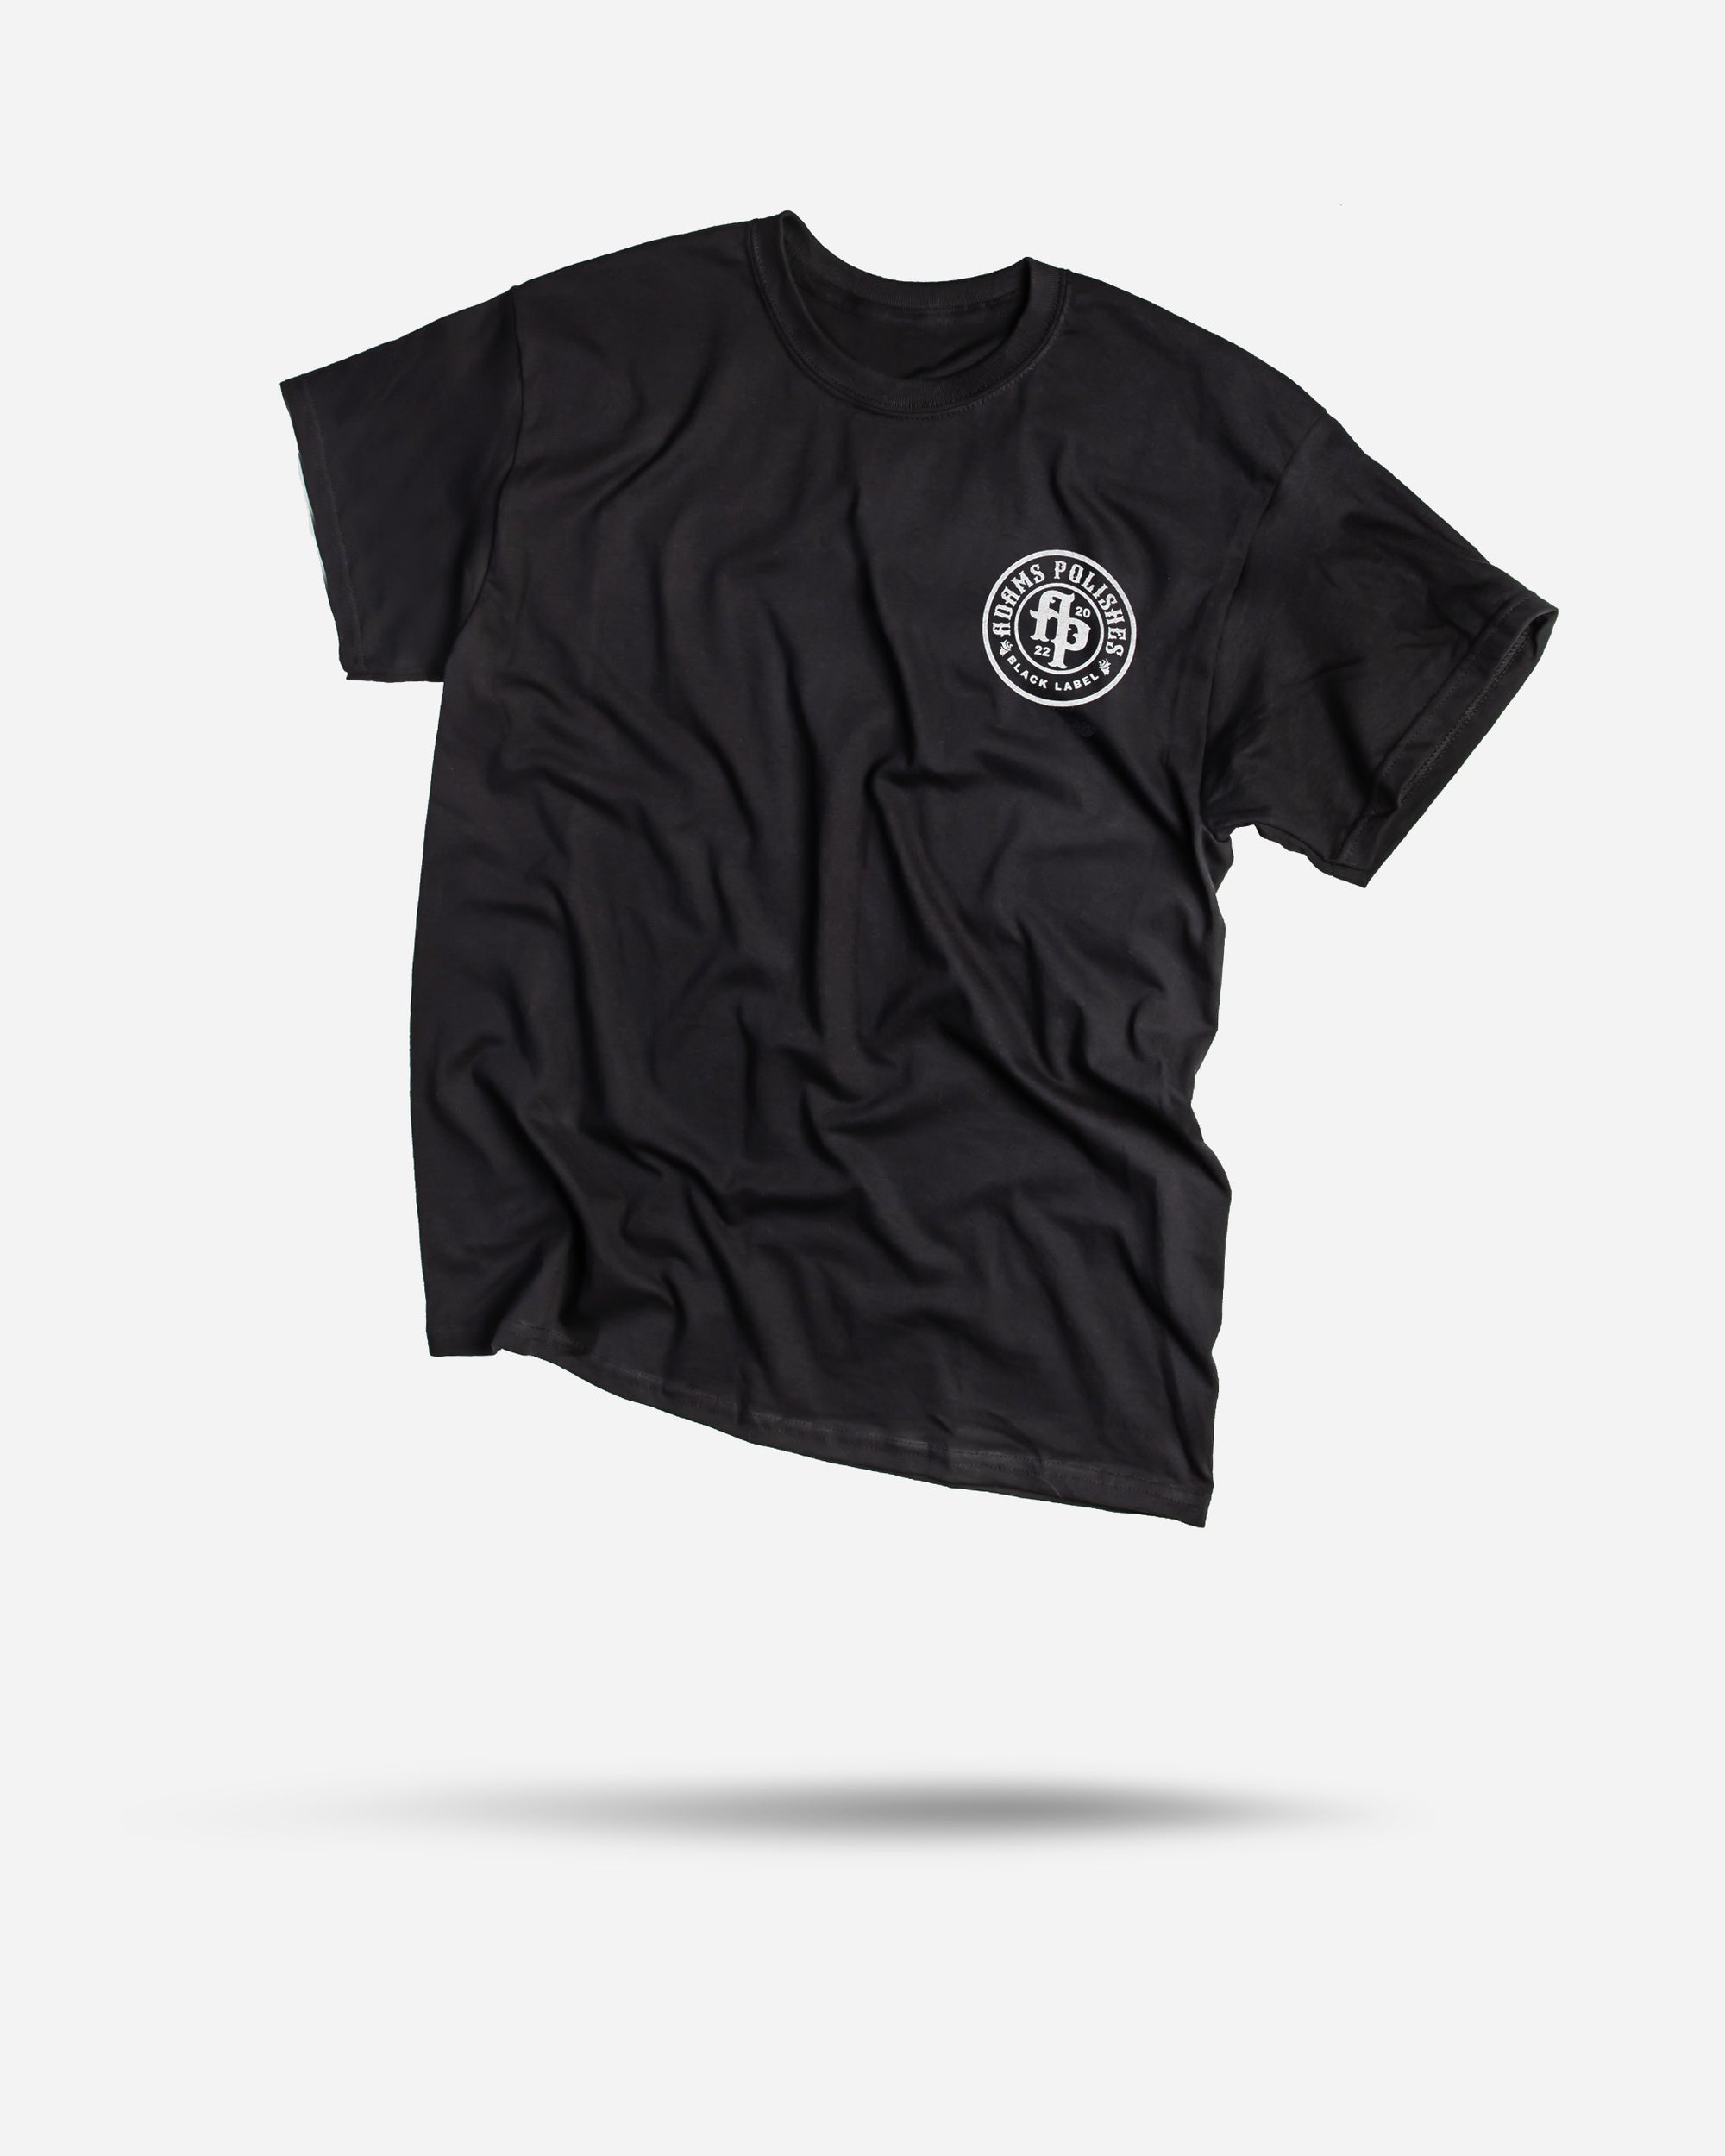 Adam's Black Label T-Shirt